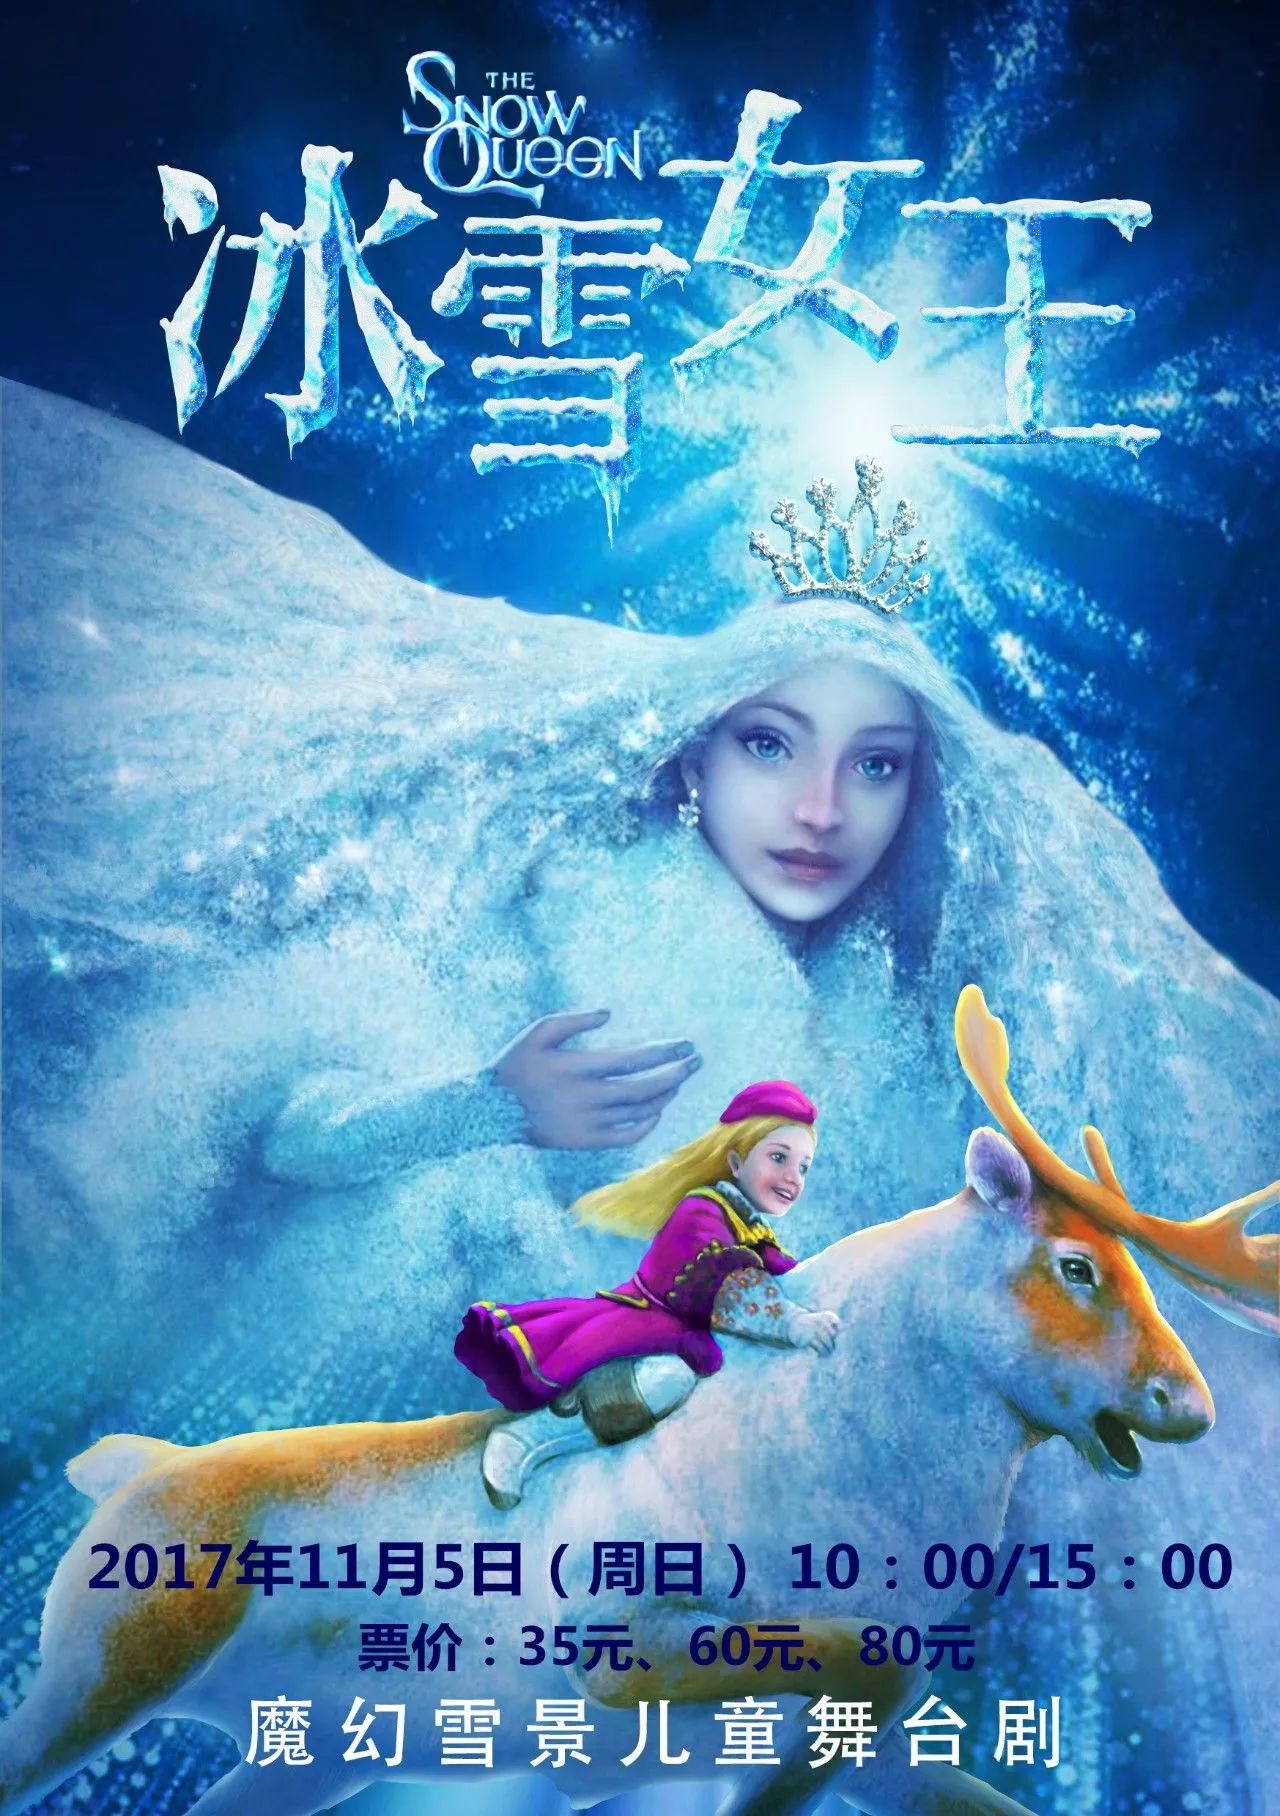 《冰雪女王4:魔镜世界》今日上映 魔法冒险揭开终极面纱_格尔达